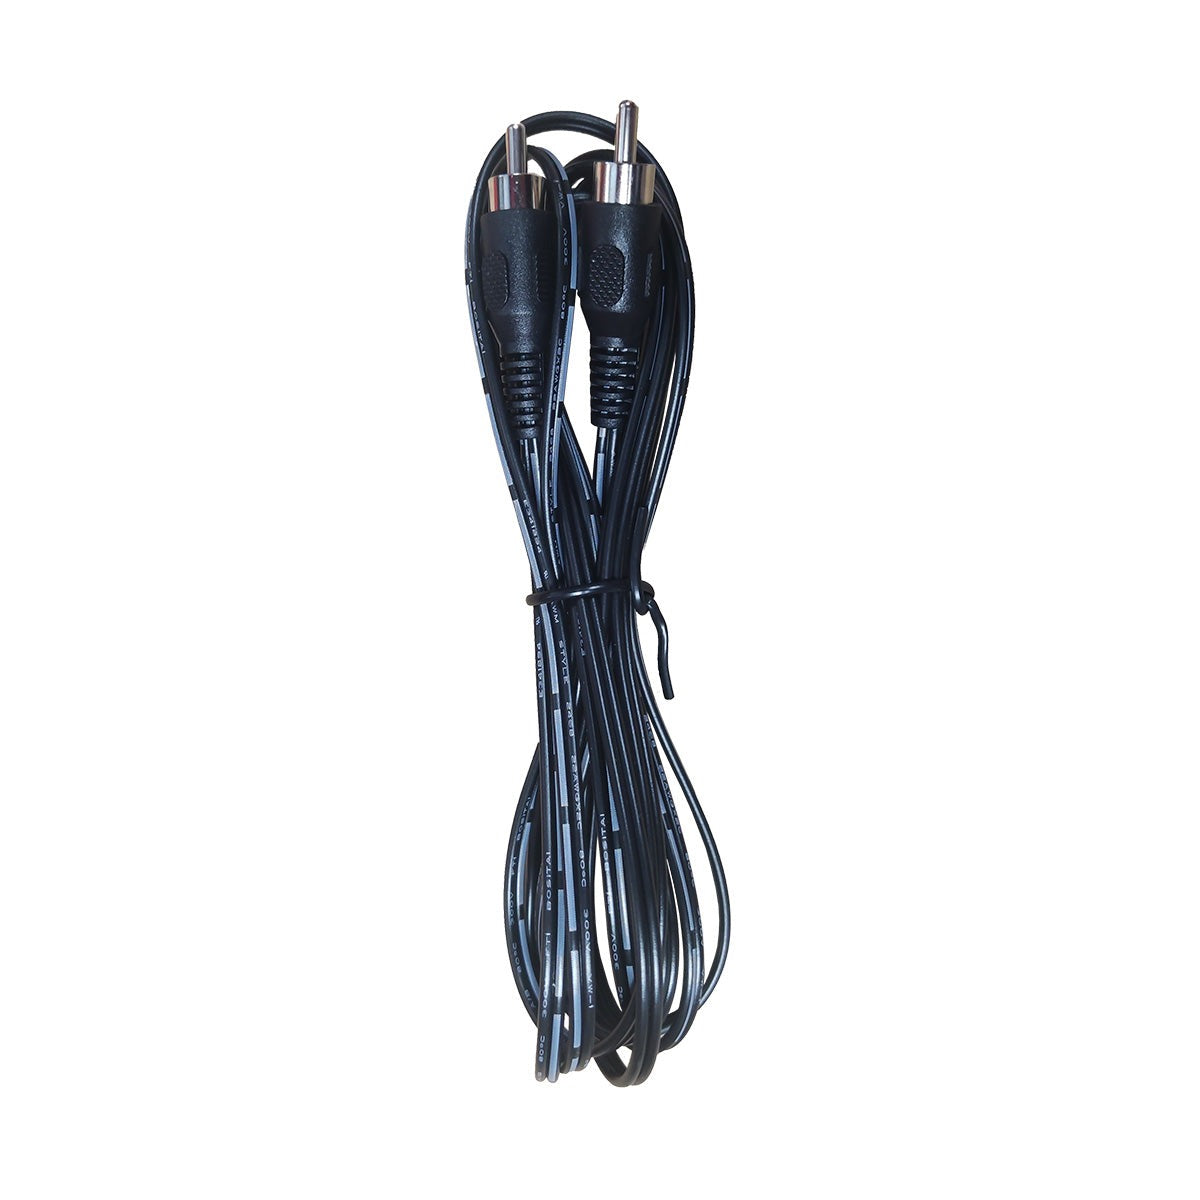 VULKKANO cable A4/A4 ARC 3 metros